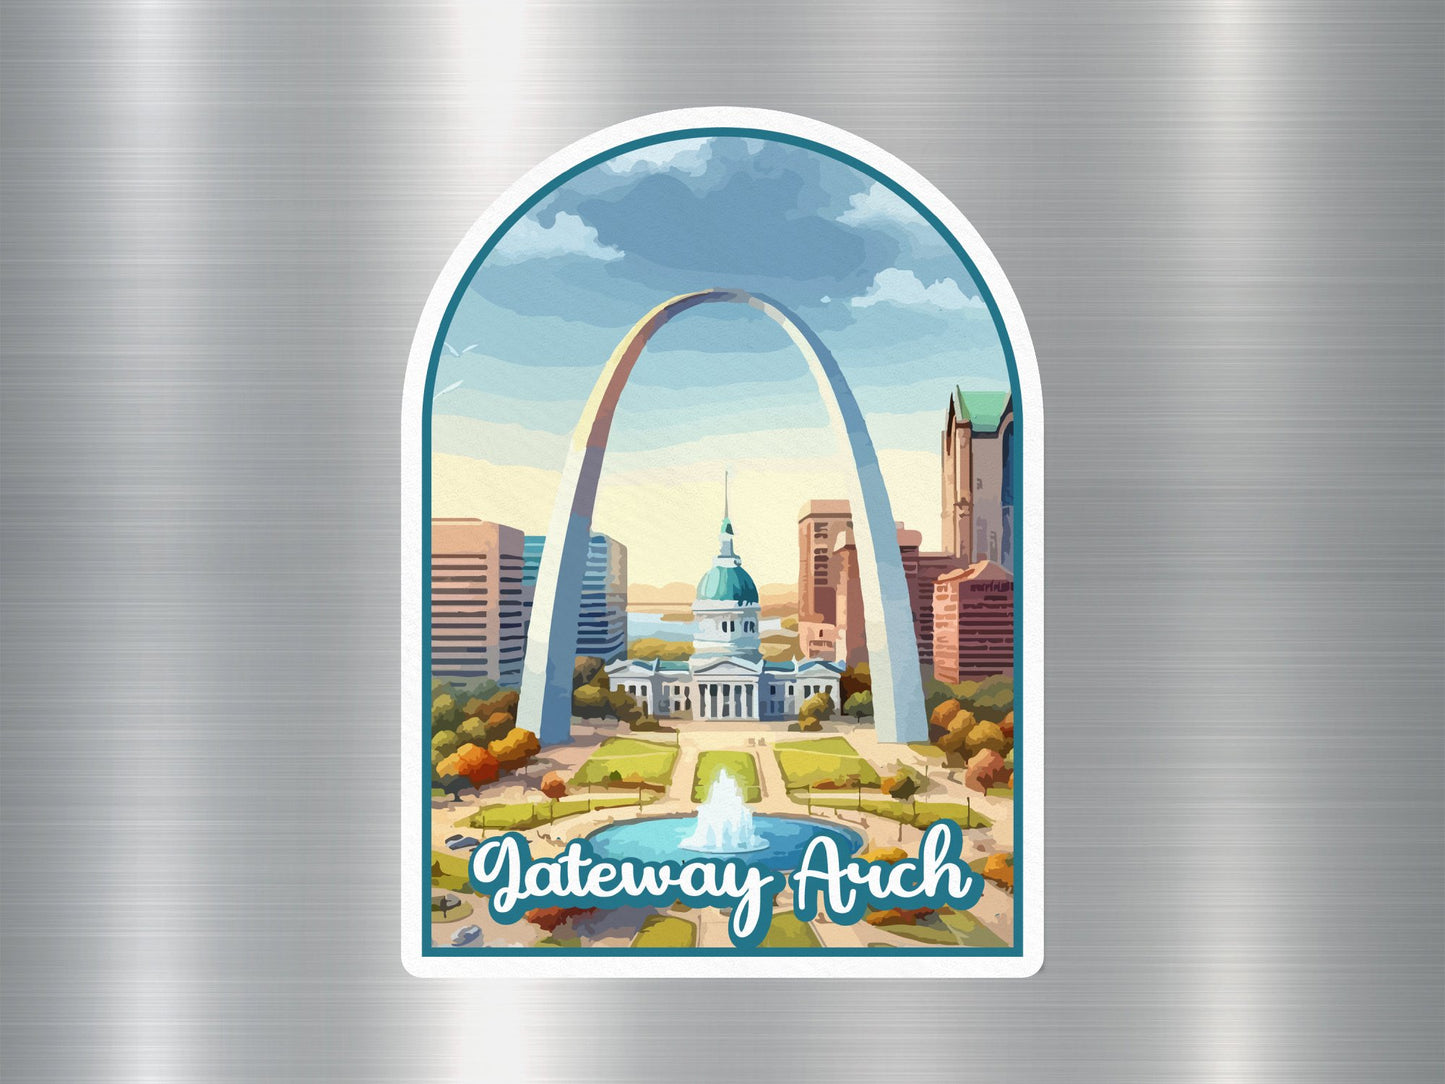 Gateway Arch National Park Sticker